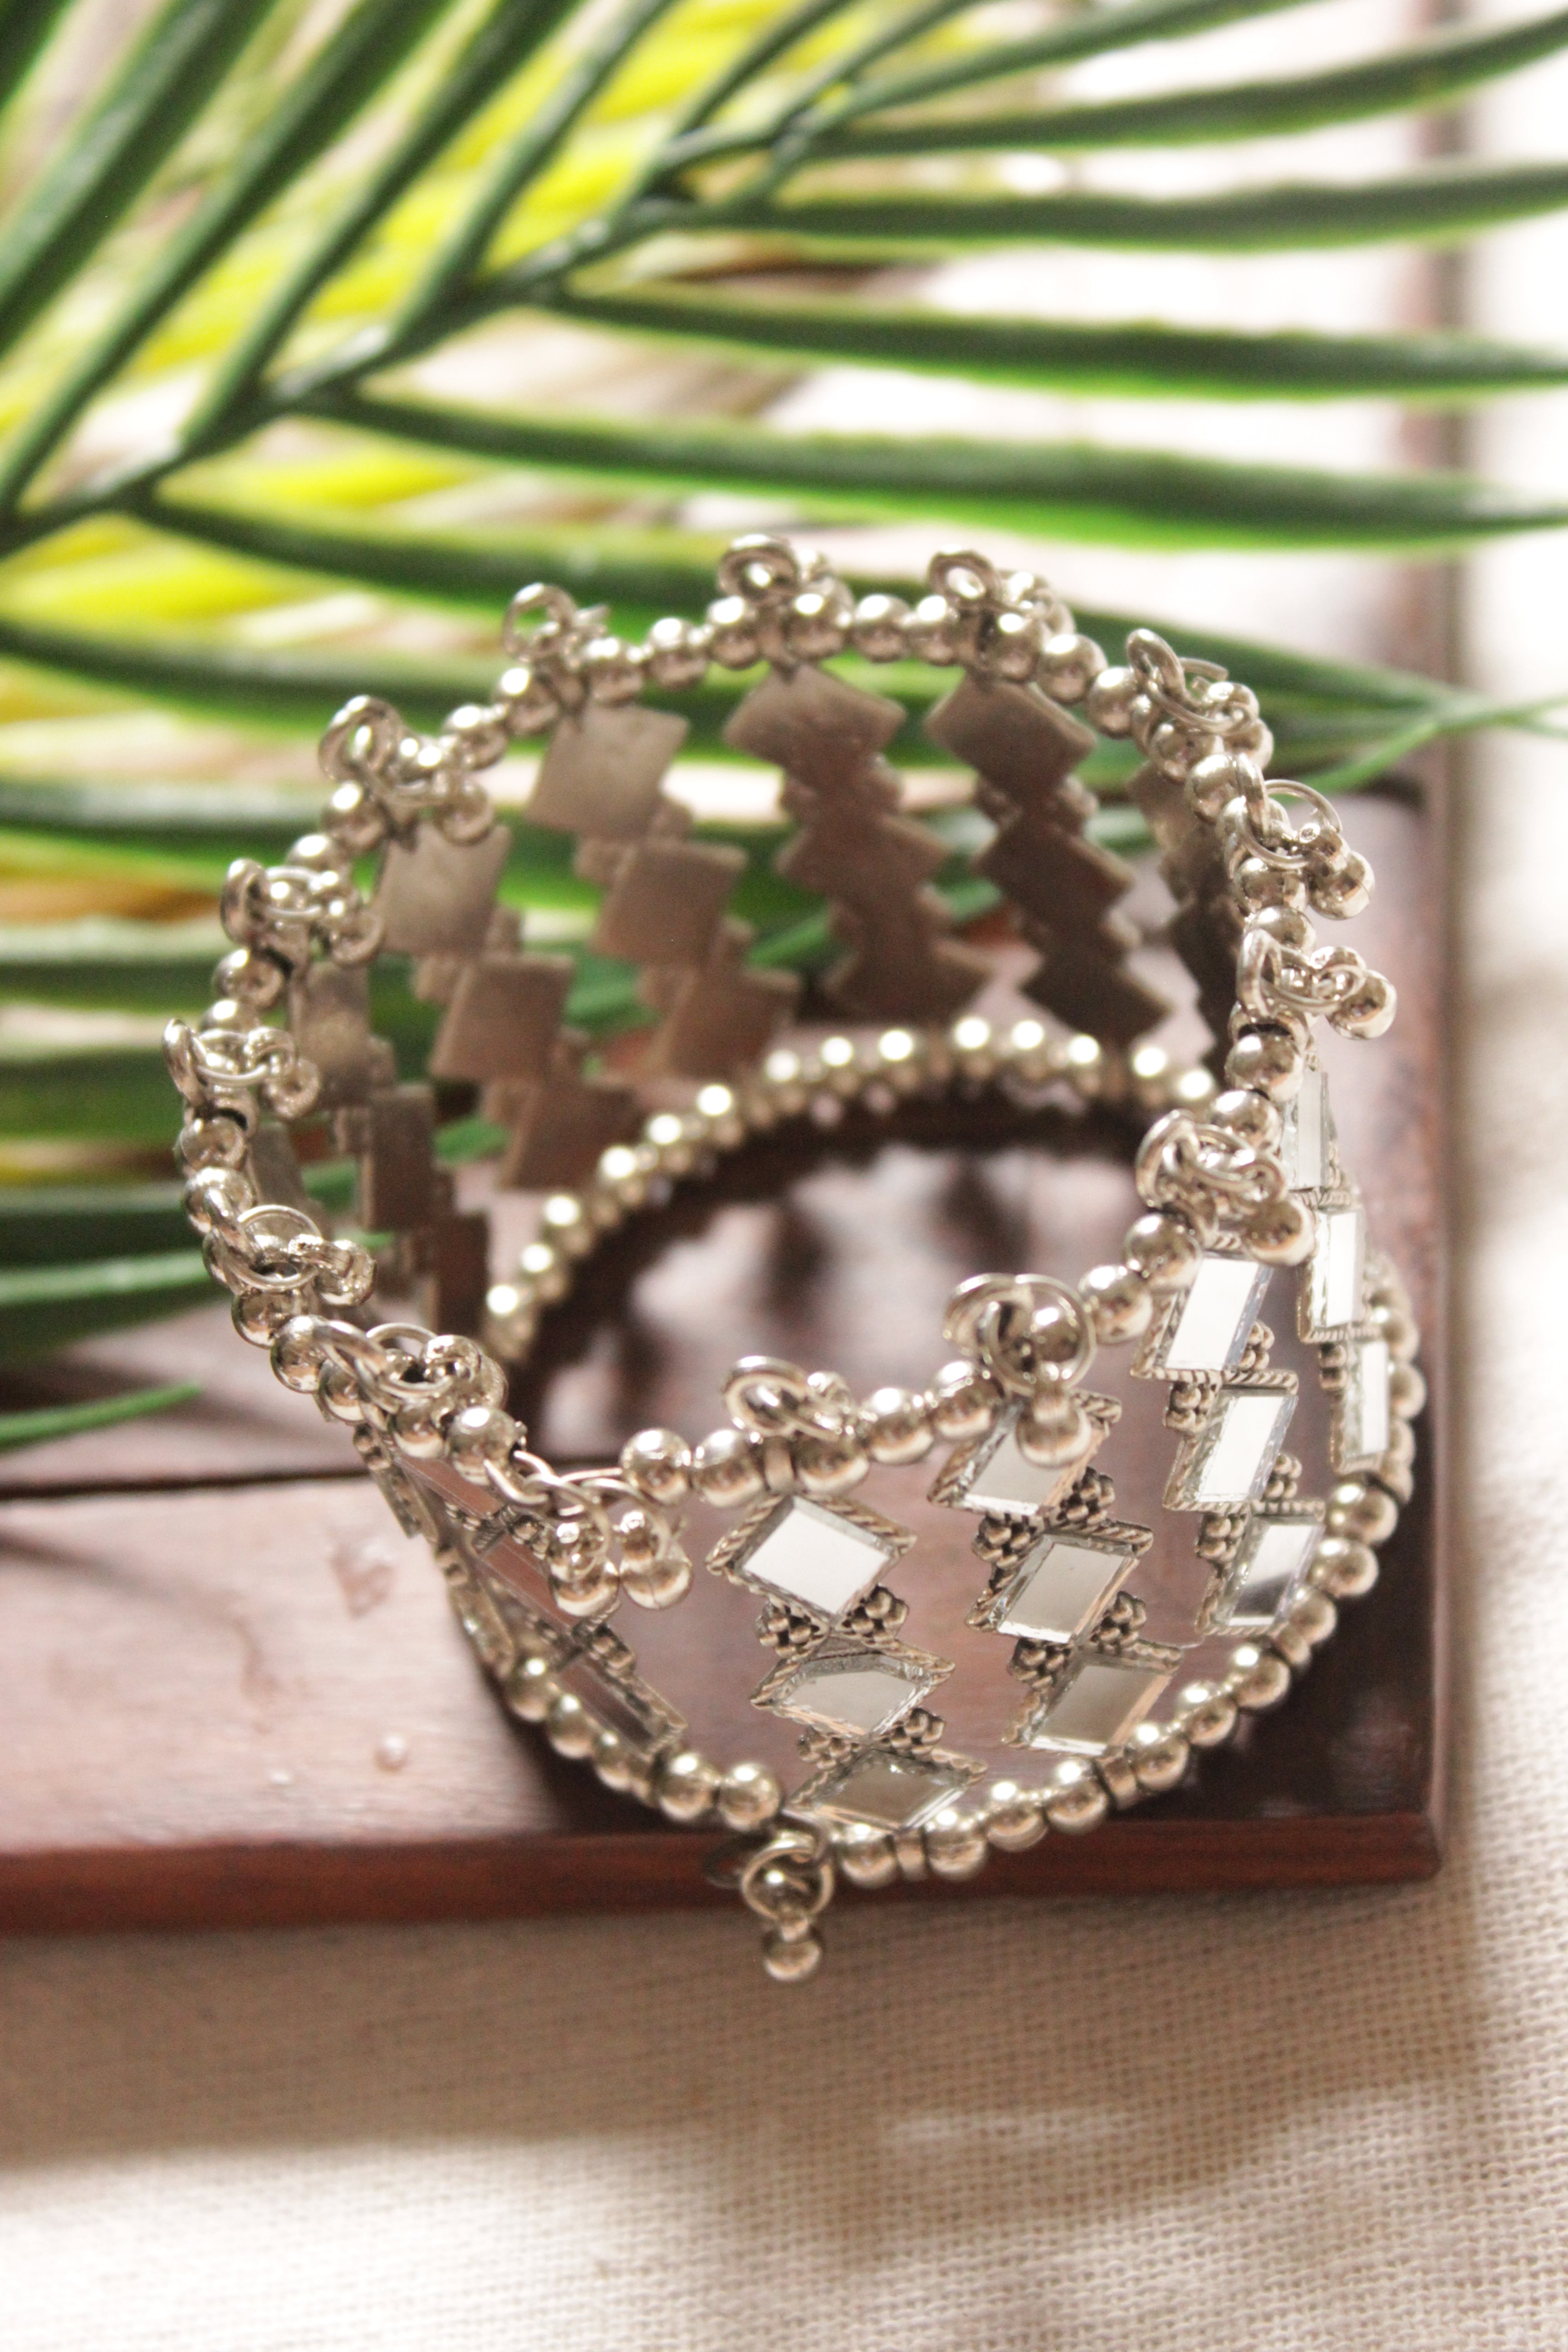 Mirror Work Elaborate Adjustable Metal Bracelet